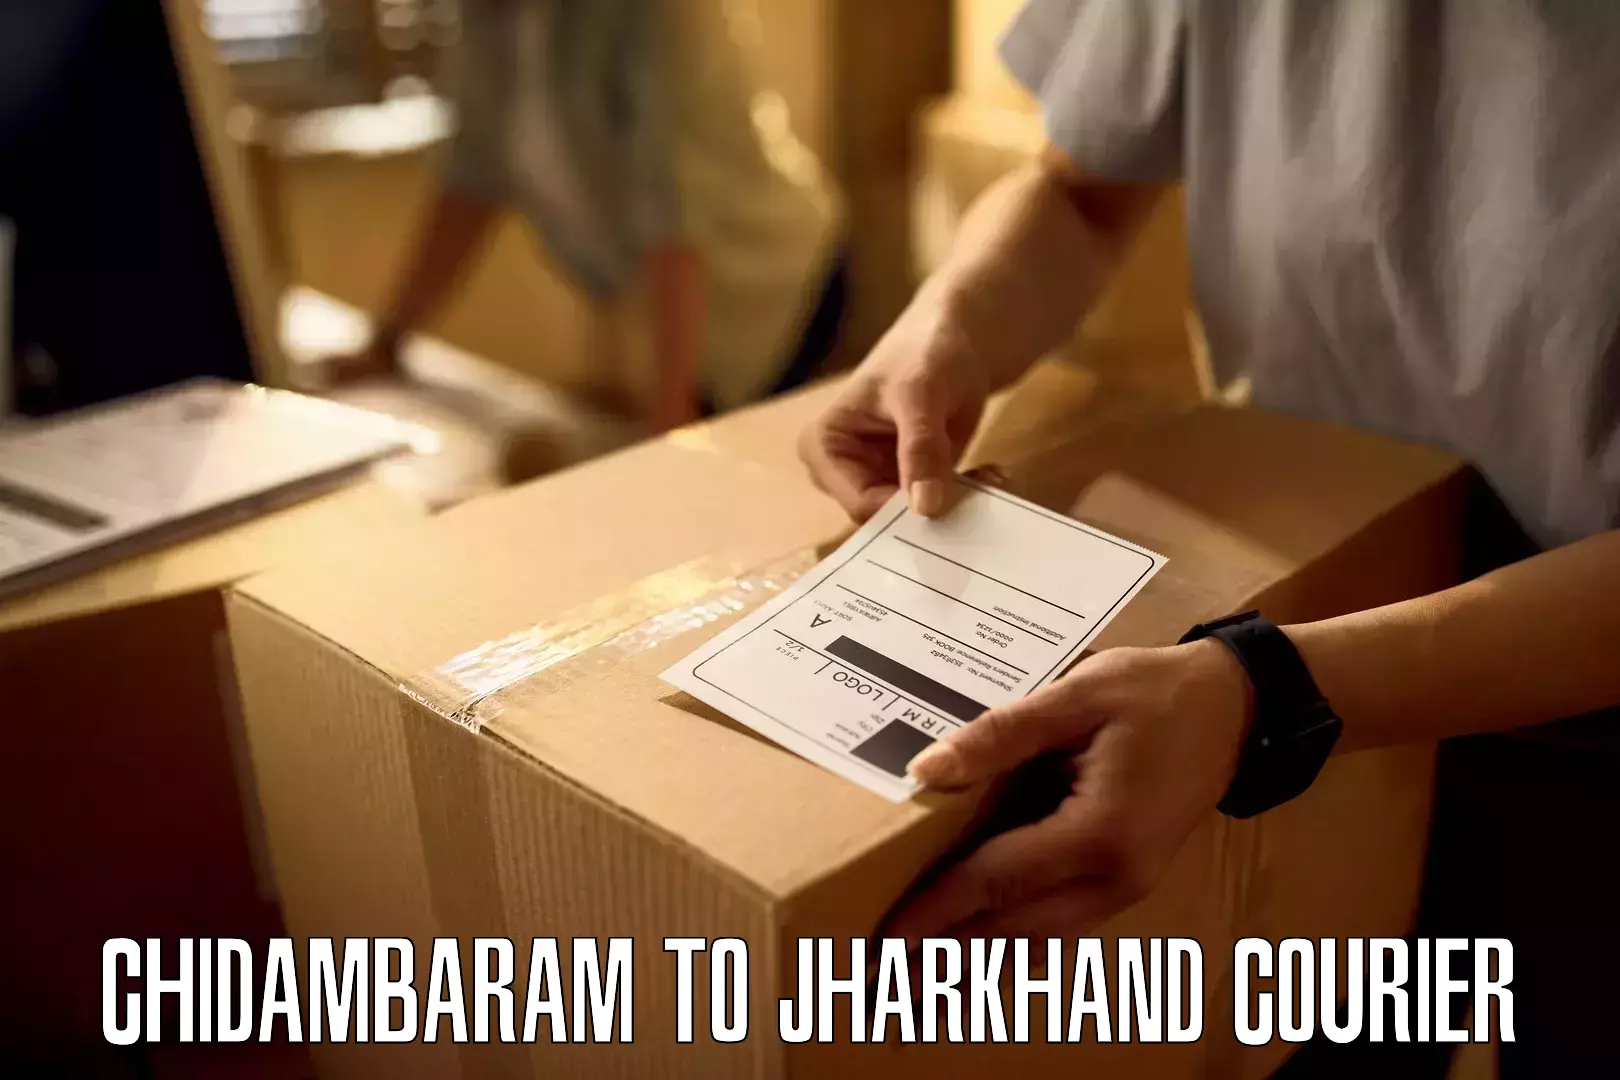 Door-to-door freight service Chidambaram to Jharkhand